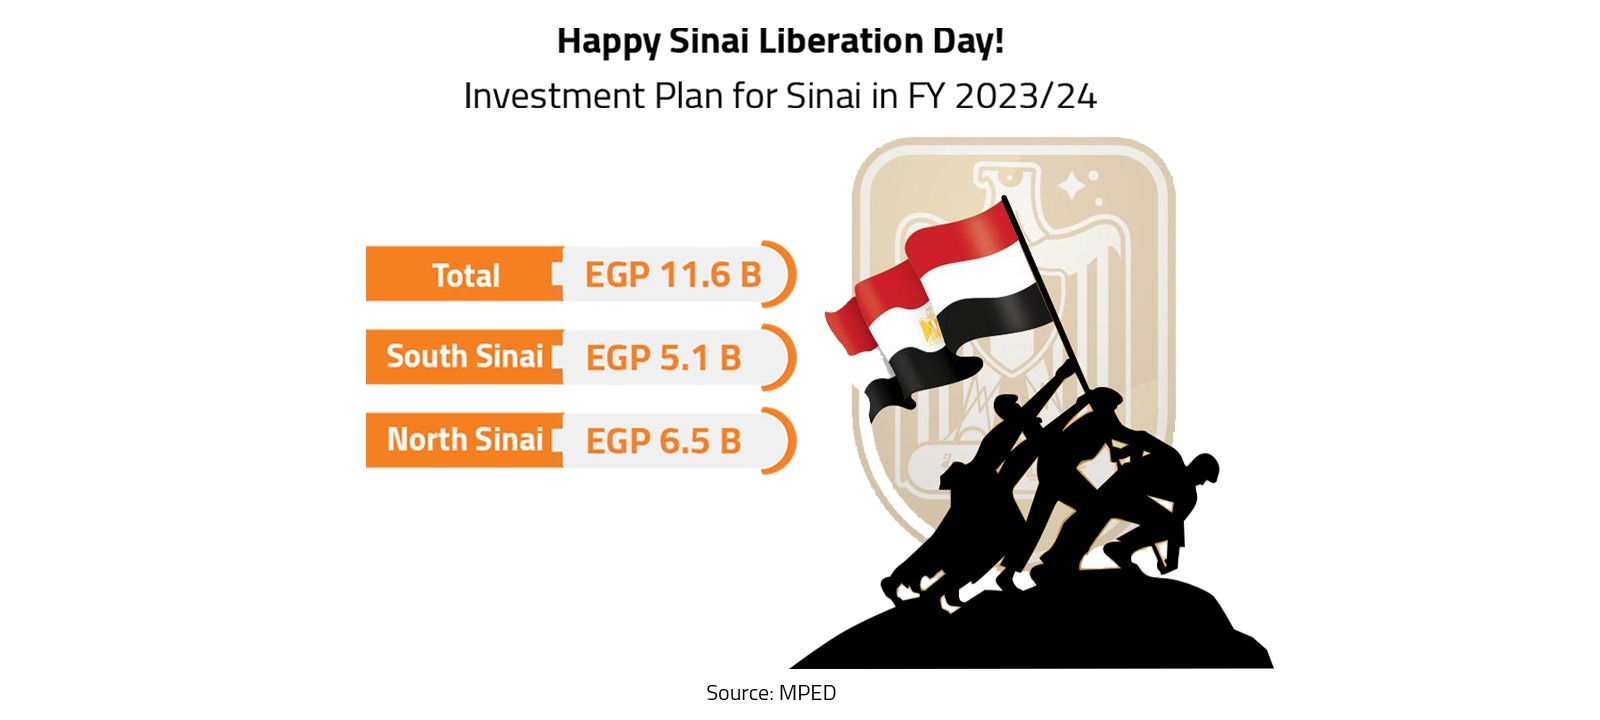 Happy Sinai Liberation Day!